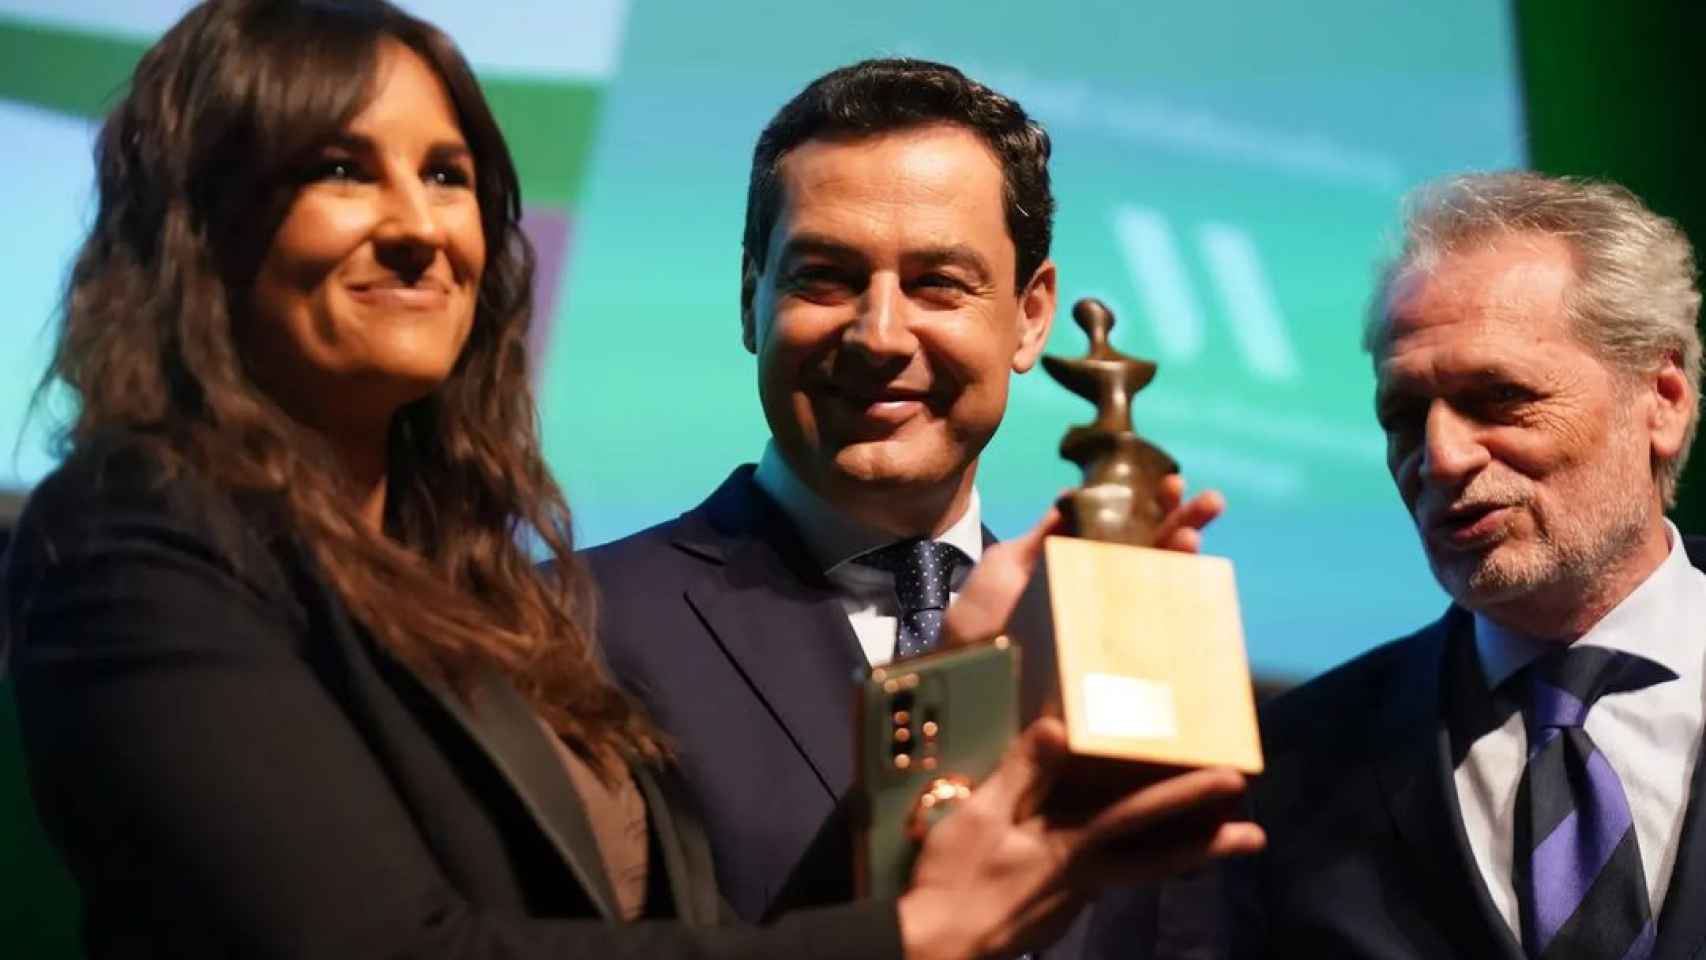 La presentadora Lorena García recogiendo el premio de la Junta de Andalucía a Antena 3.